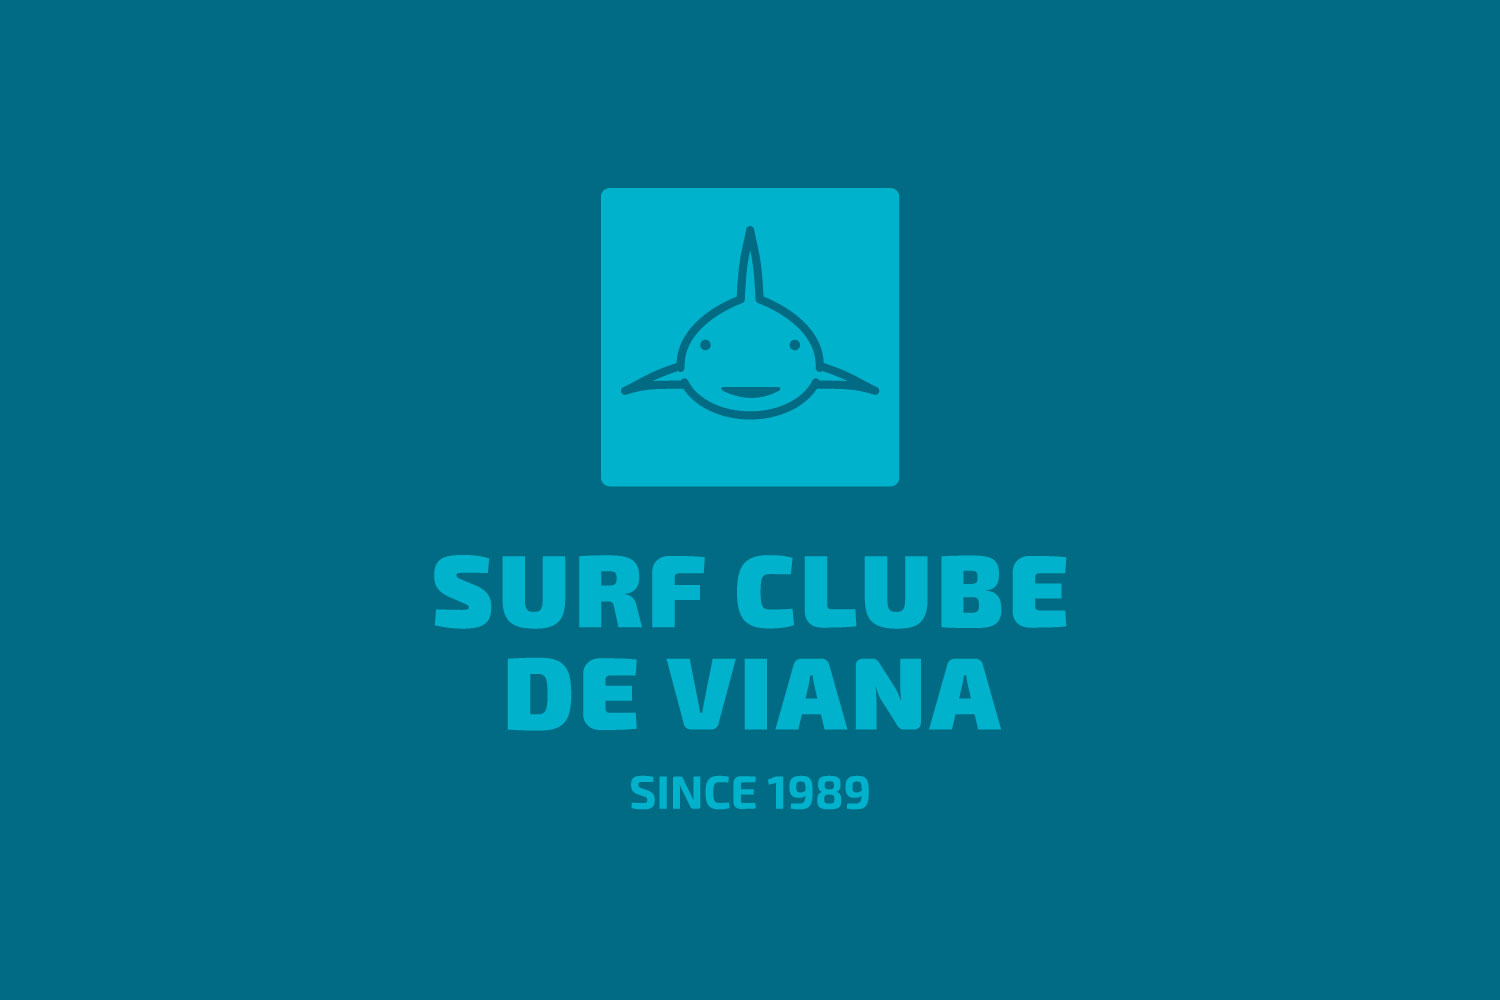 Viana Surf City Festival - No Image